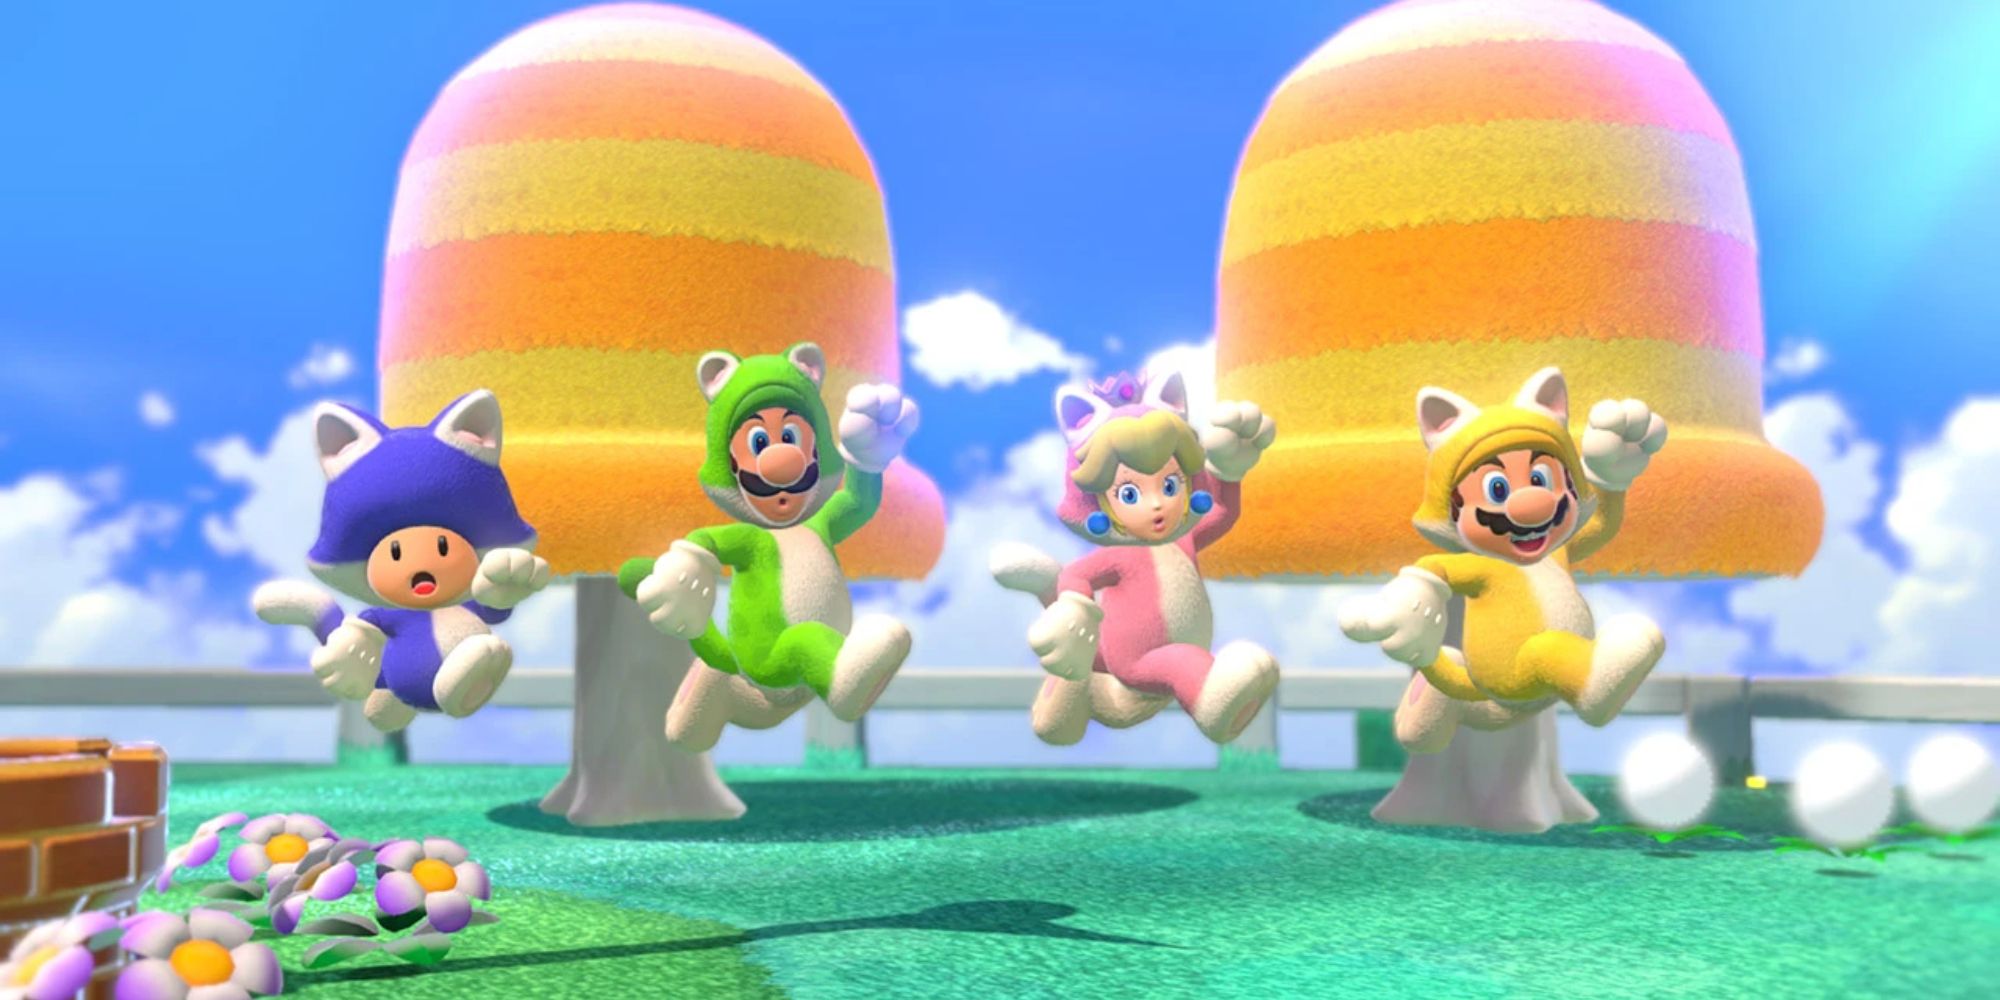 Toad, Luigi, Peach, and Mario jumping in cat costumes